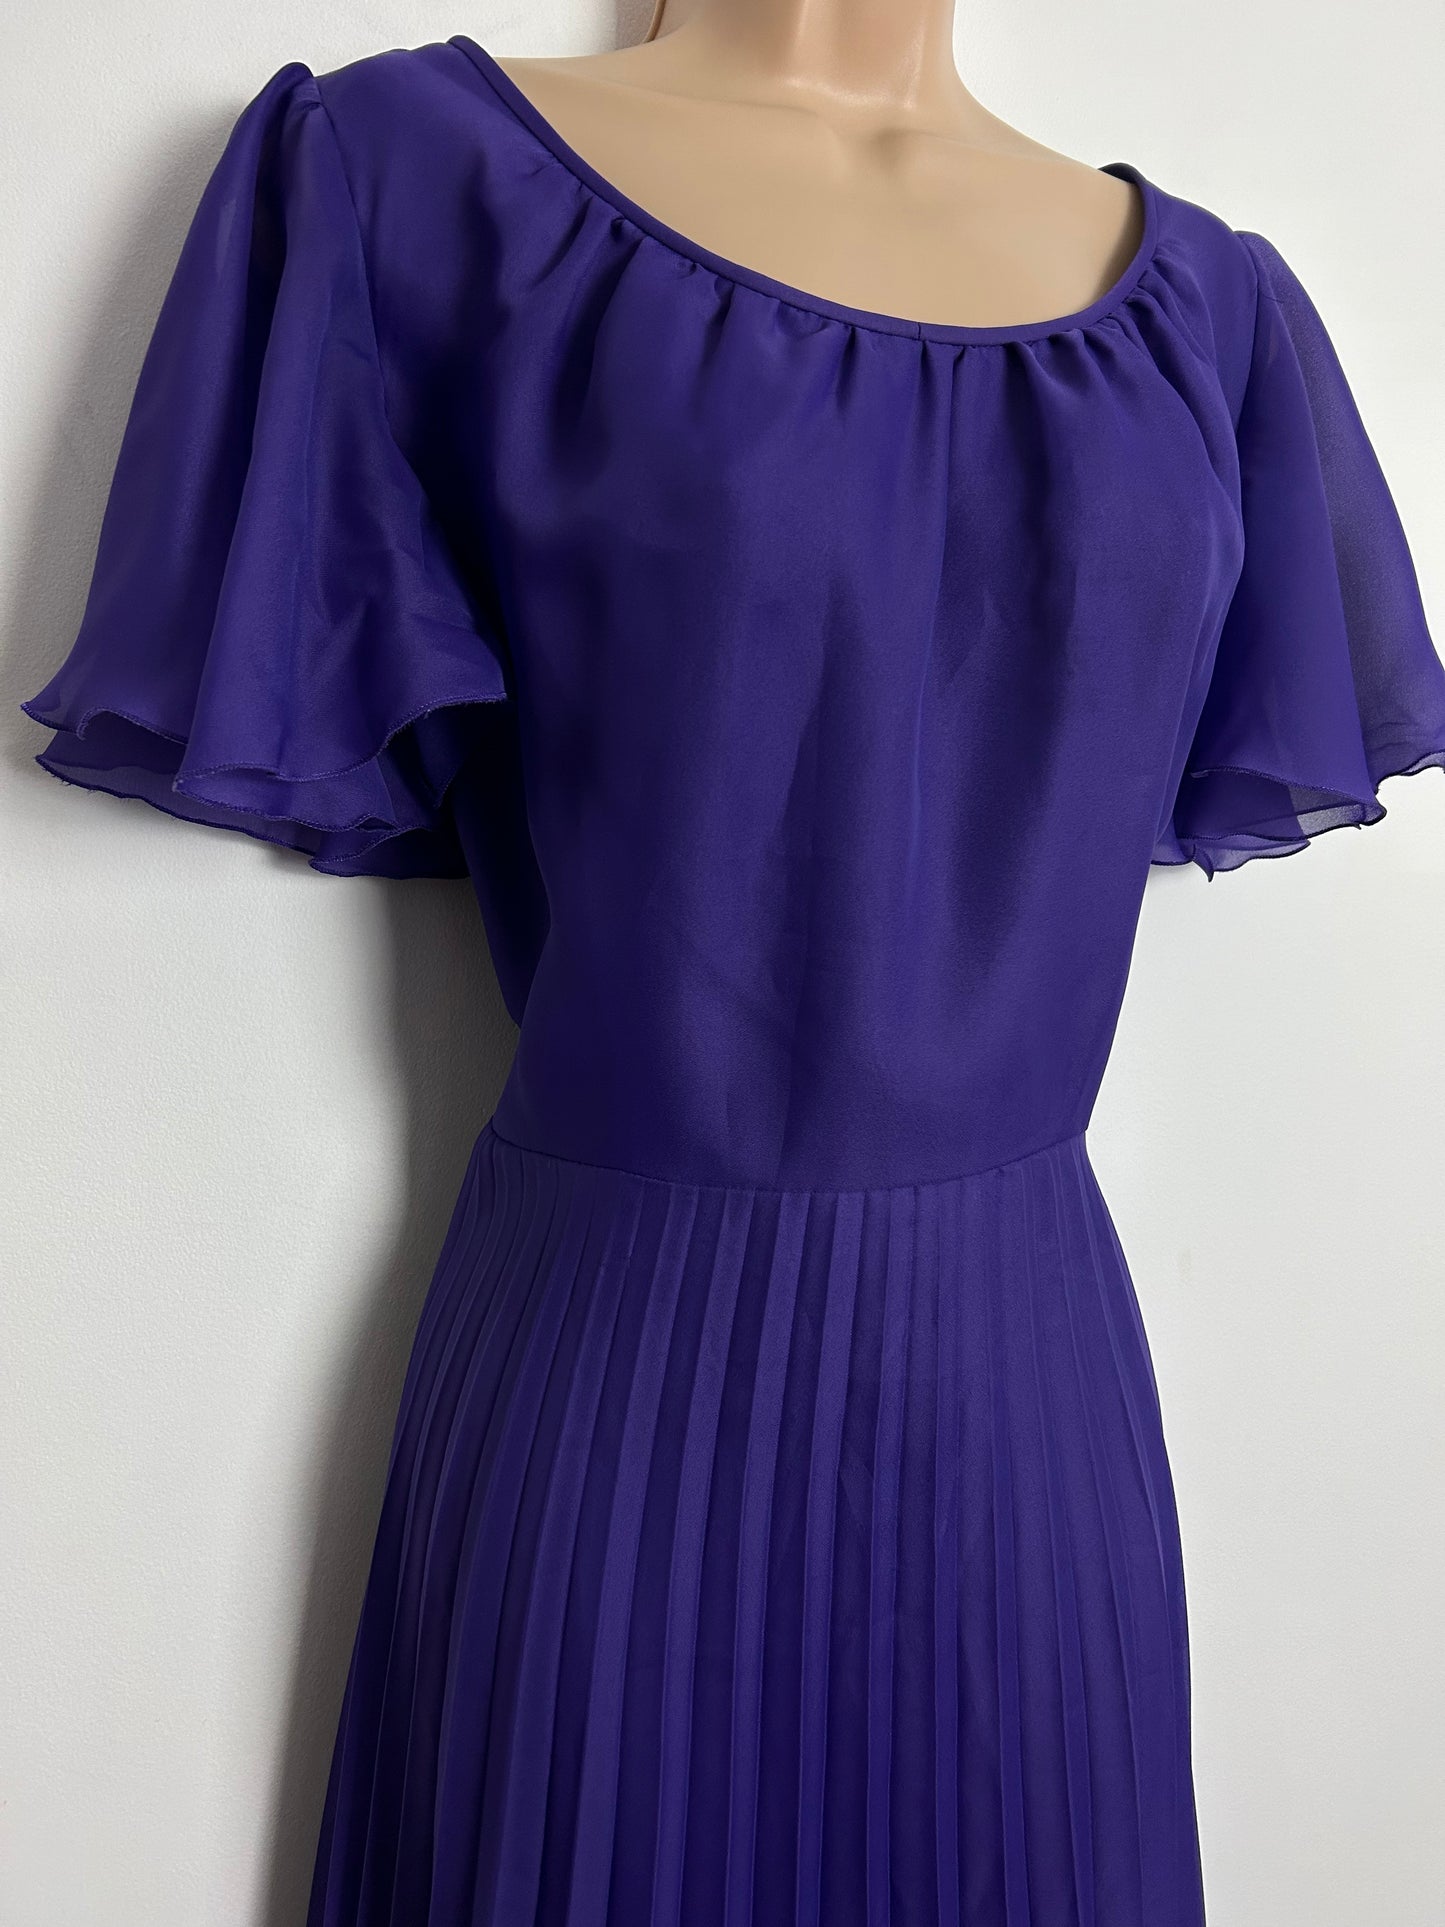 Vintage 1970s UK Size 8-10 Purple Chiffon Short Flared Sleeve Pleated Boho Maxi Dress